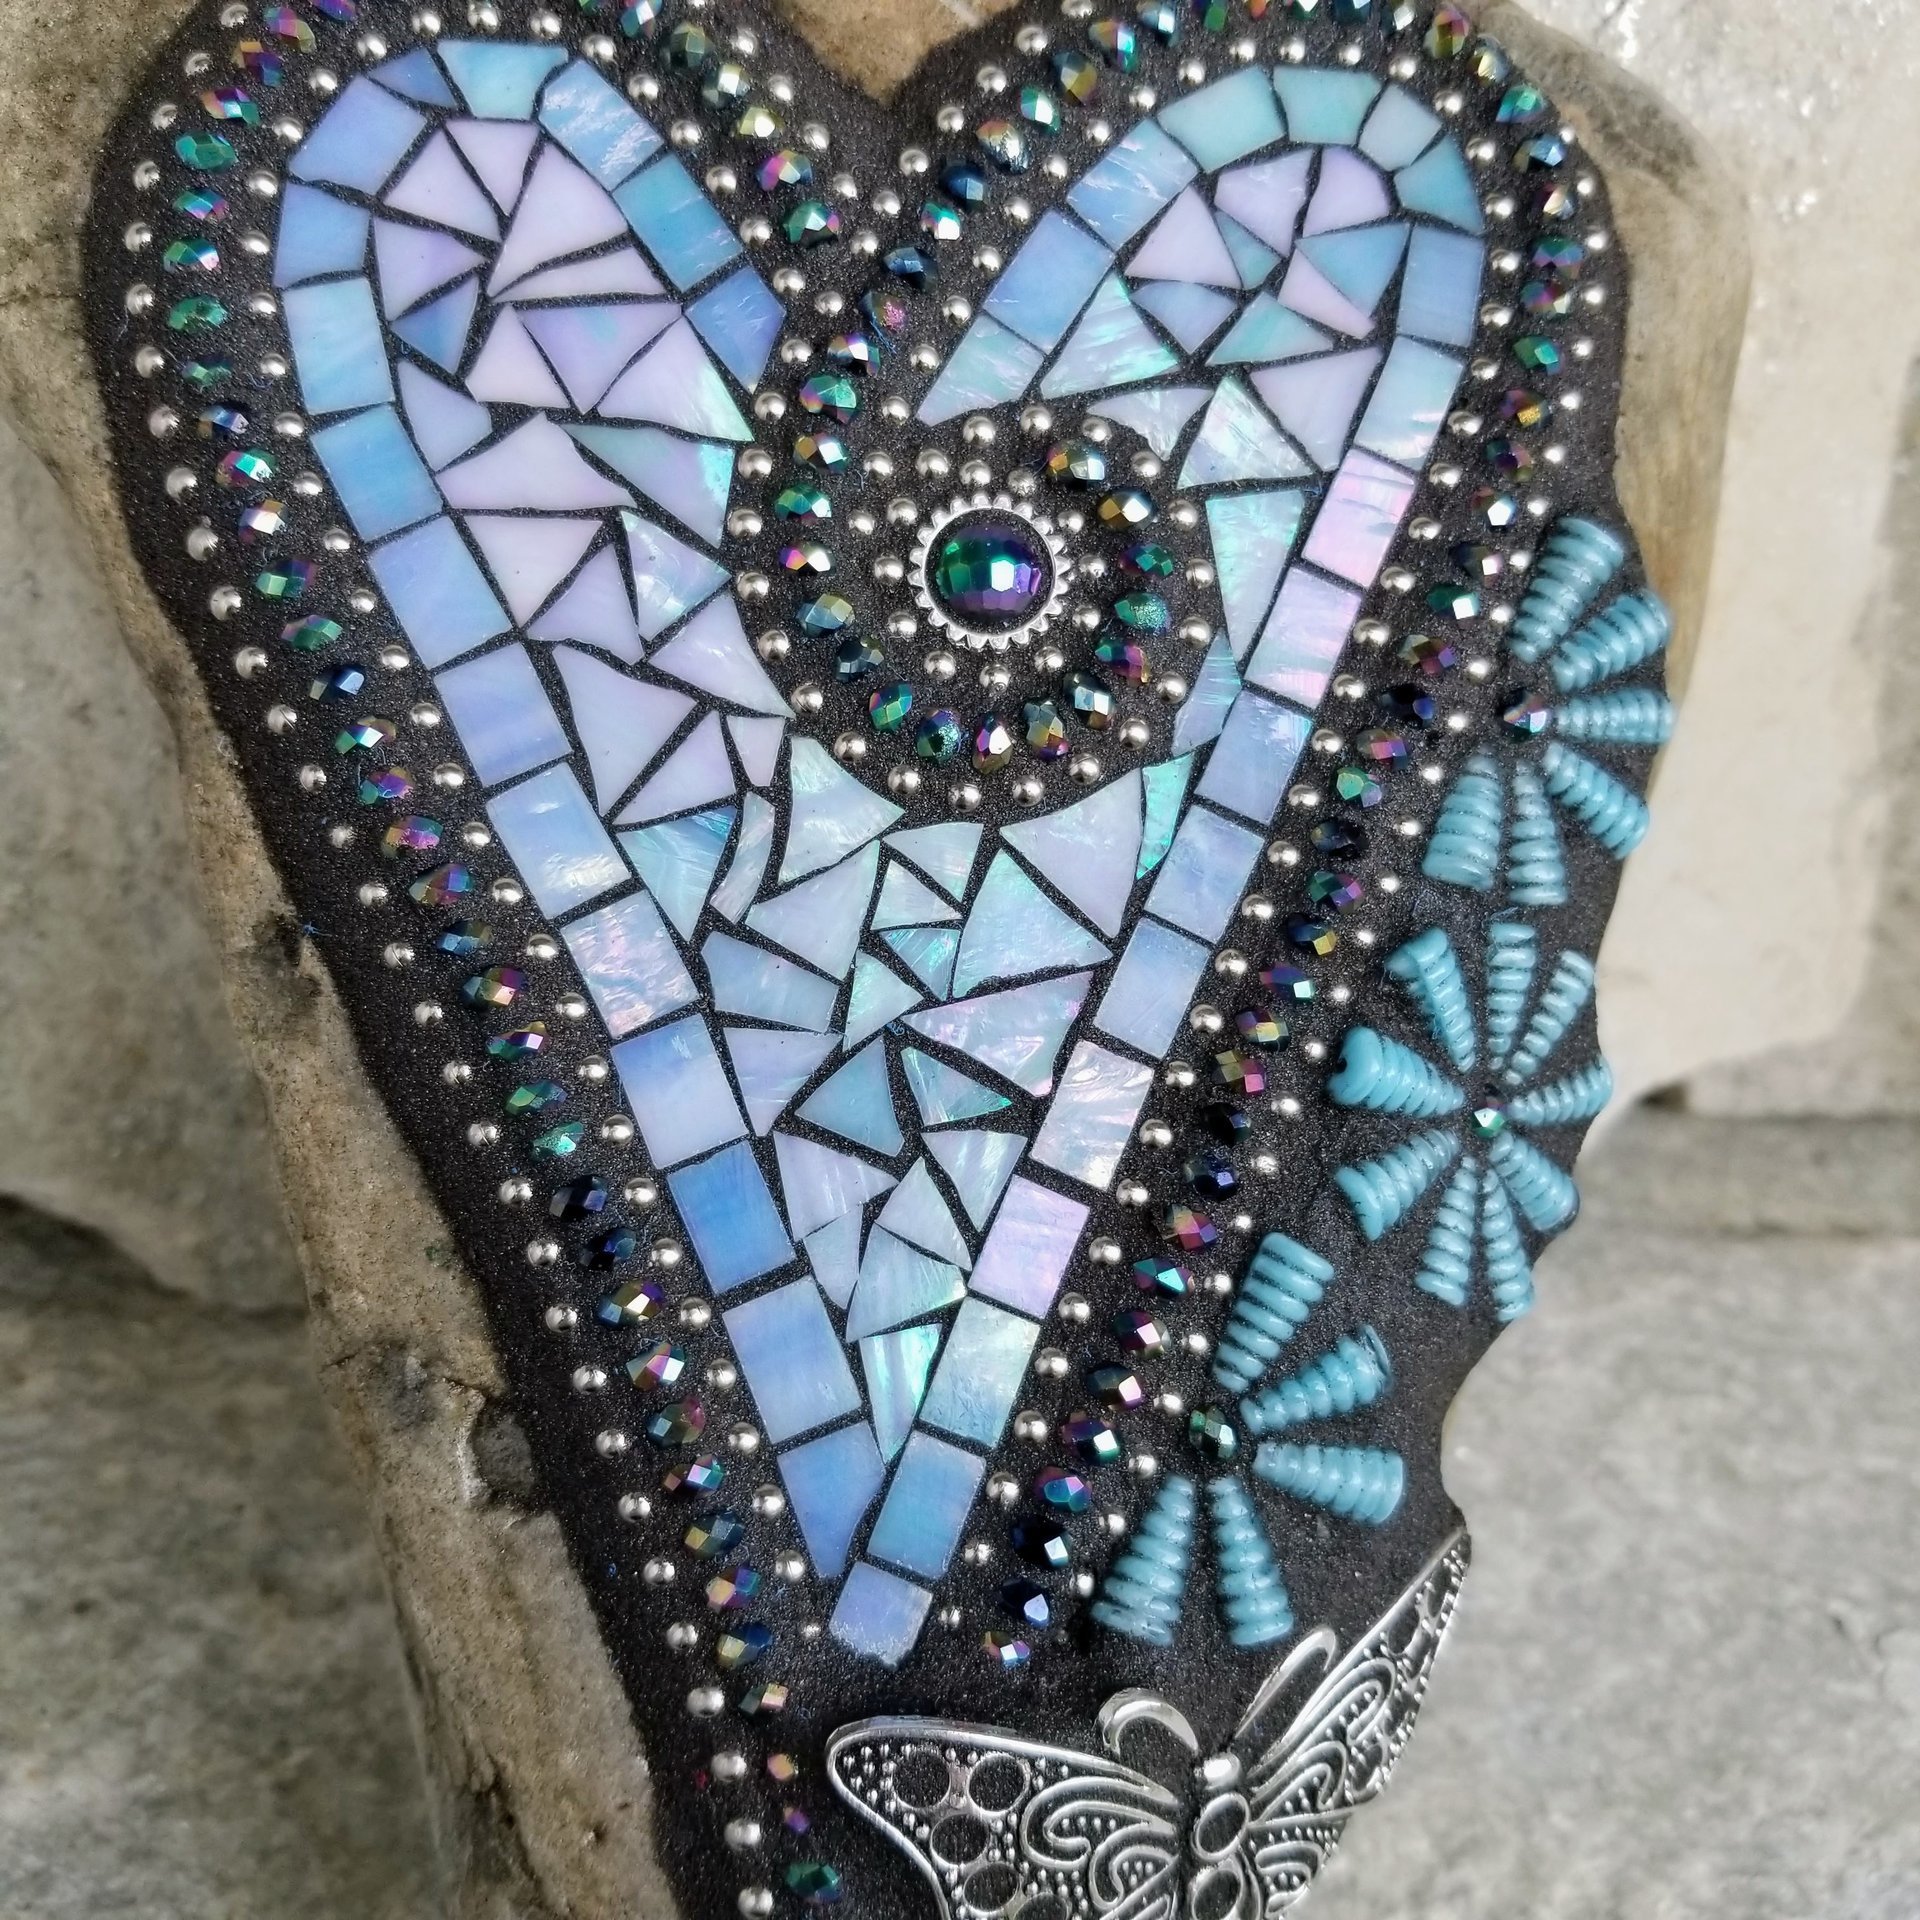 Iridescent Blue Mosaic Heart, Blue Flowers, Garden Stone